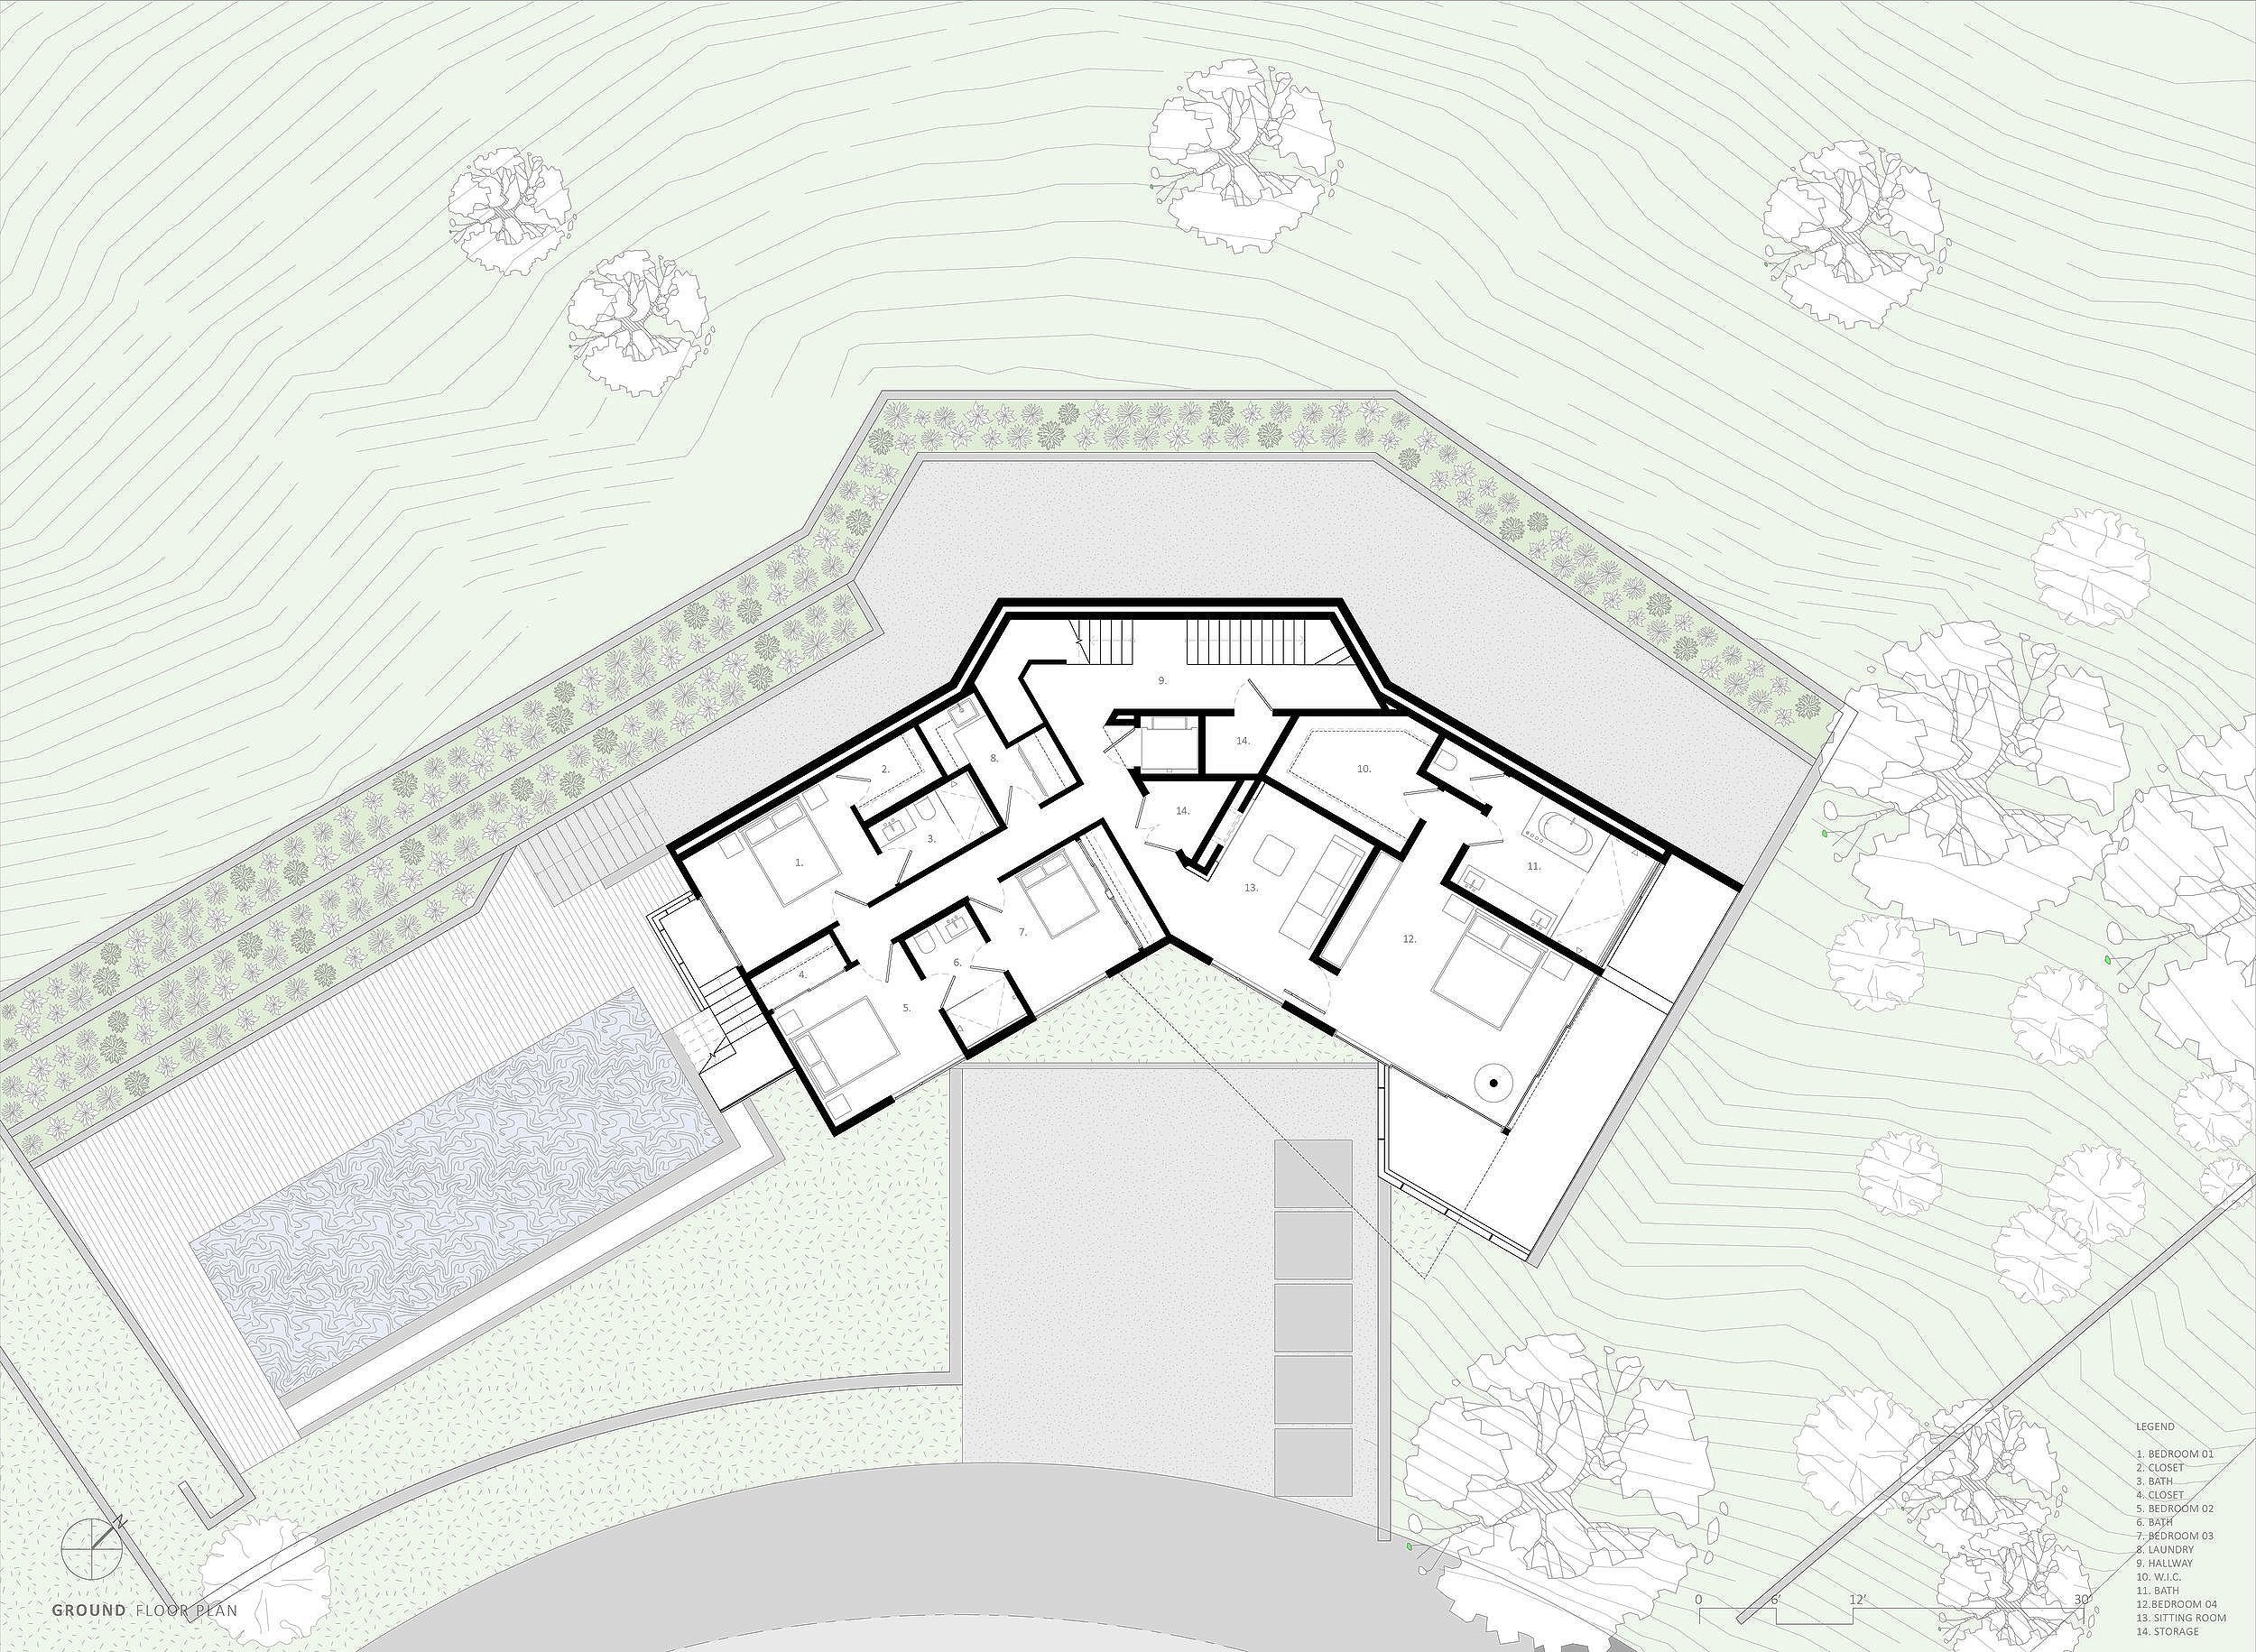 bspk-design-architecture-california-4450-residenital-treehouse-ground+floor+plan.jpg